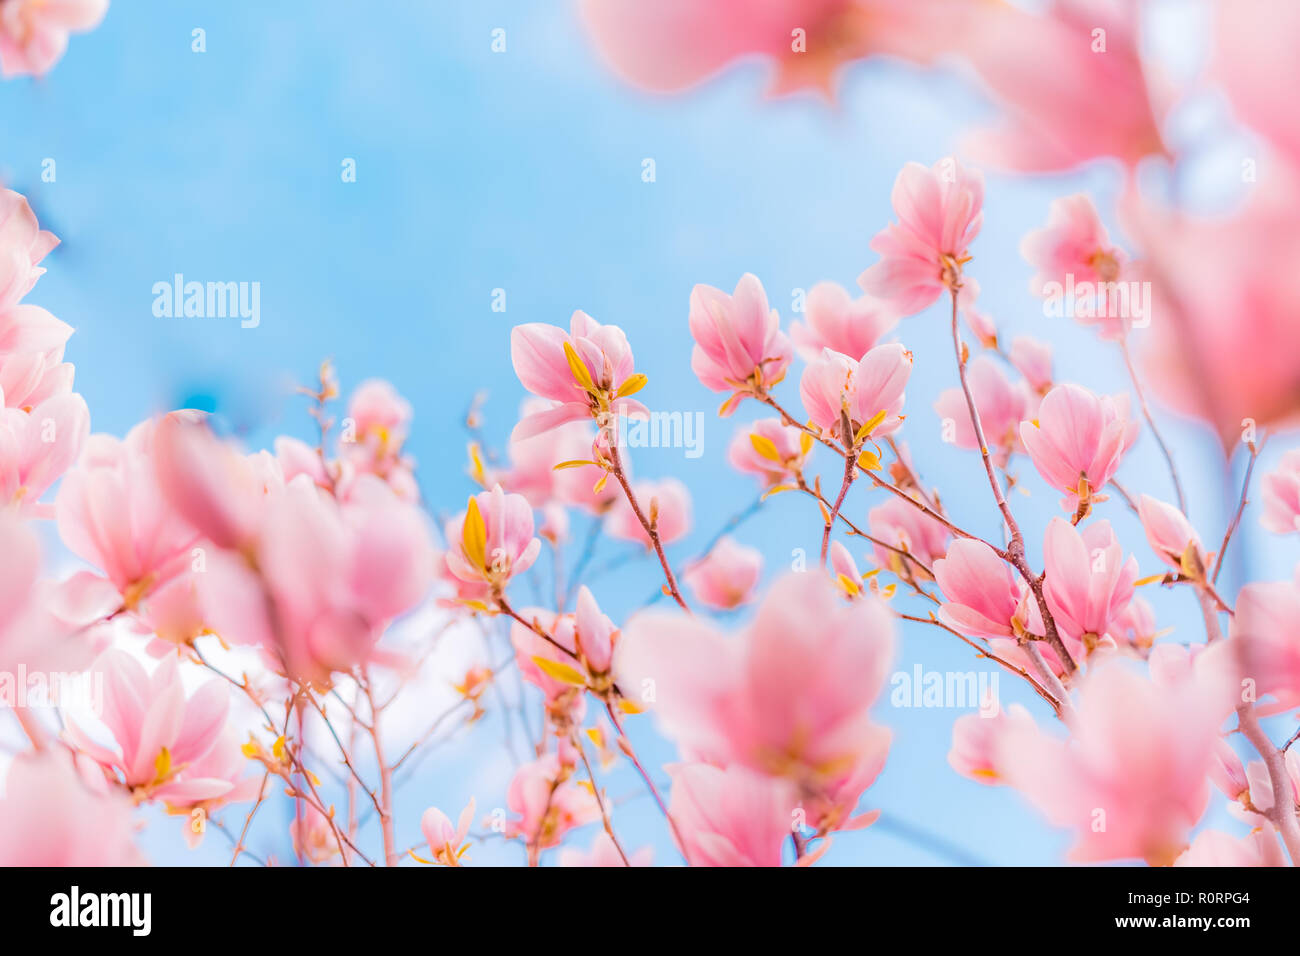 Schöne Blumen Frühling abstrakt Hintergrund der Natur. Pastellfarben der blühenden Aprikose Makro mit Soft Focus auf sanften hellblauen Himmel Hintergrund Stockfoto